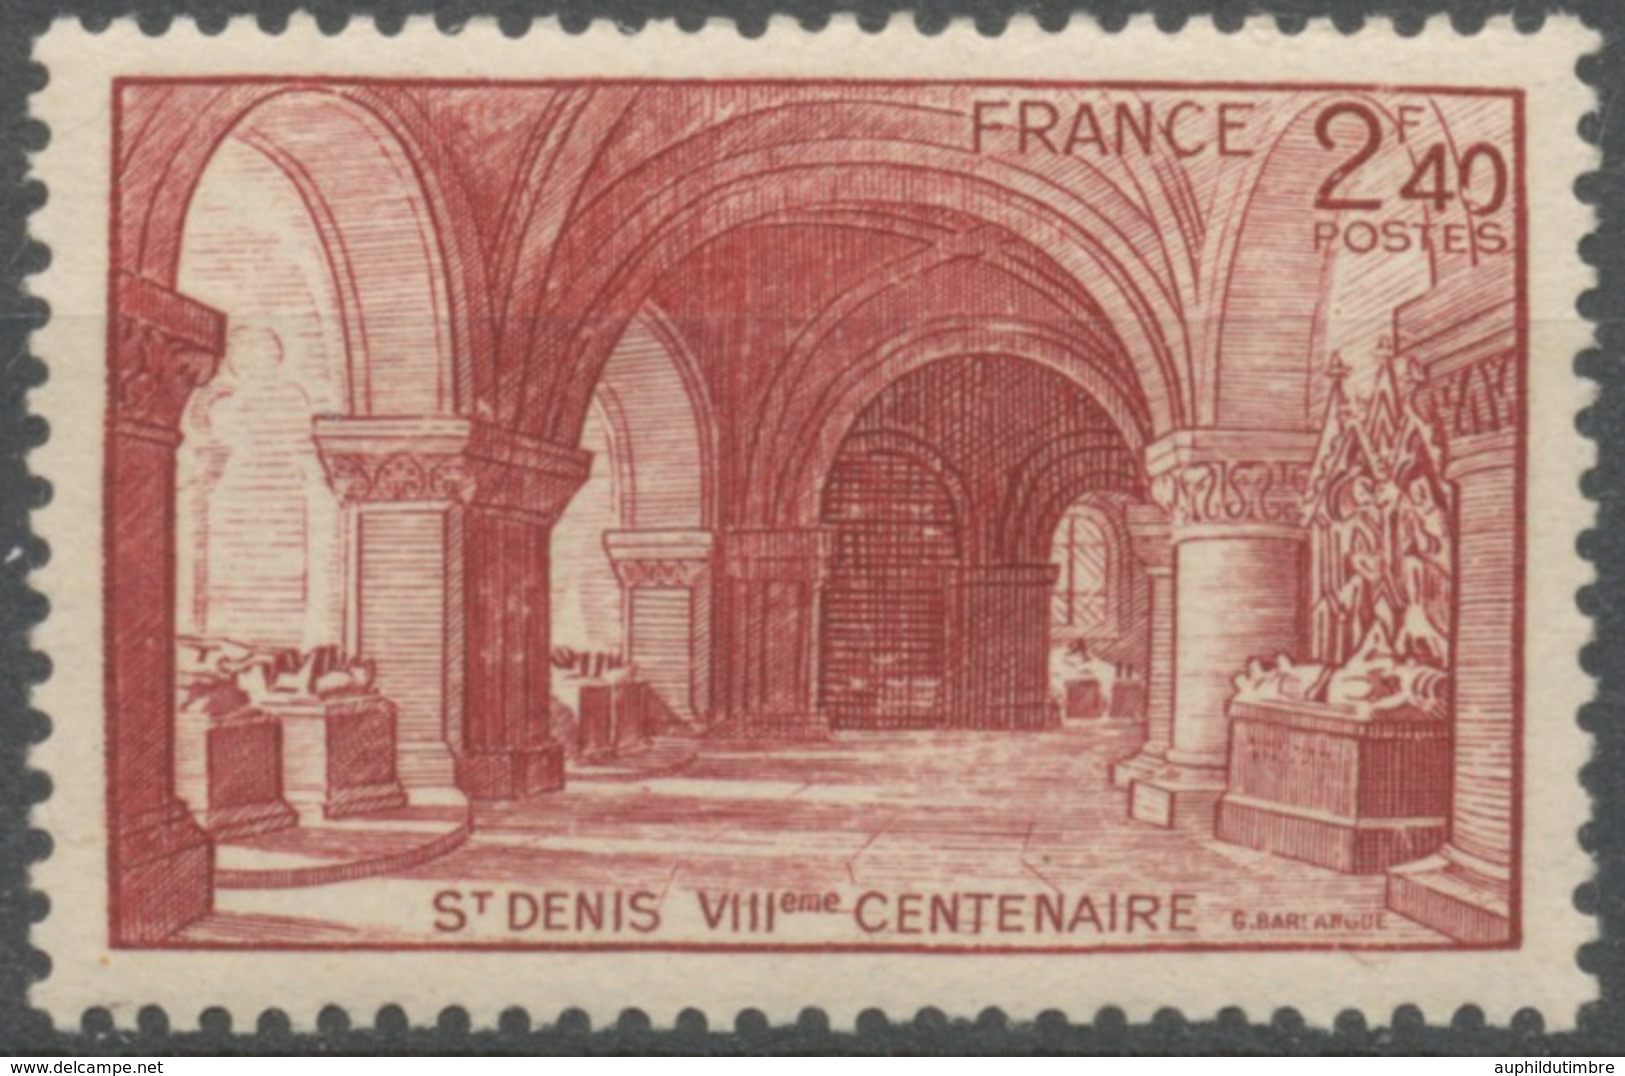 Huitième Centenaire De La Basilique De Saint-Denis. 2f.40 Brun-rouge Neuf Luxe ** Y661 - Nuovi